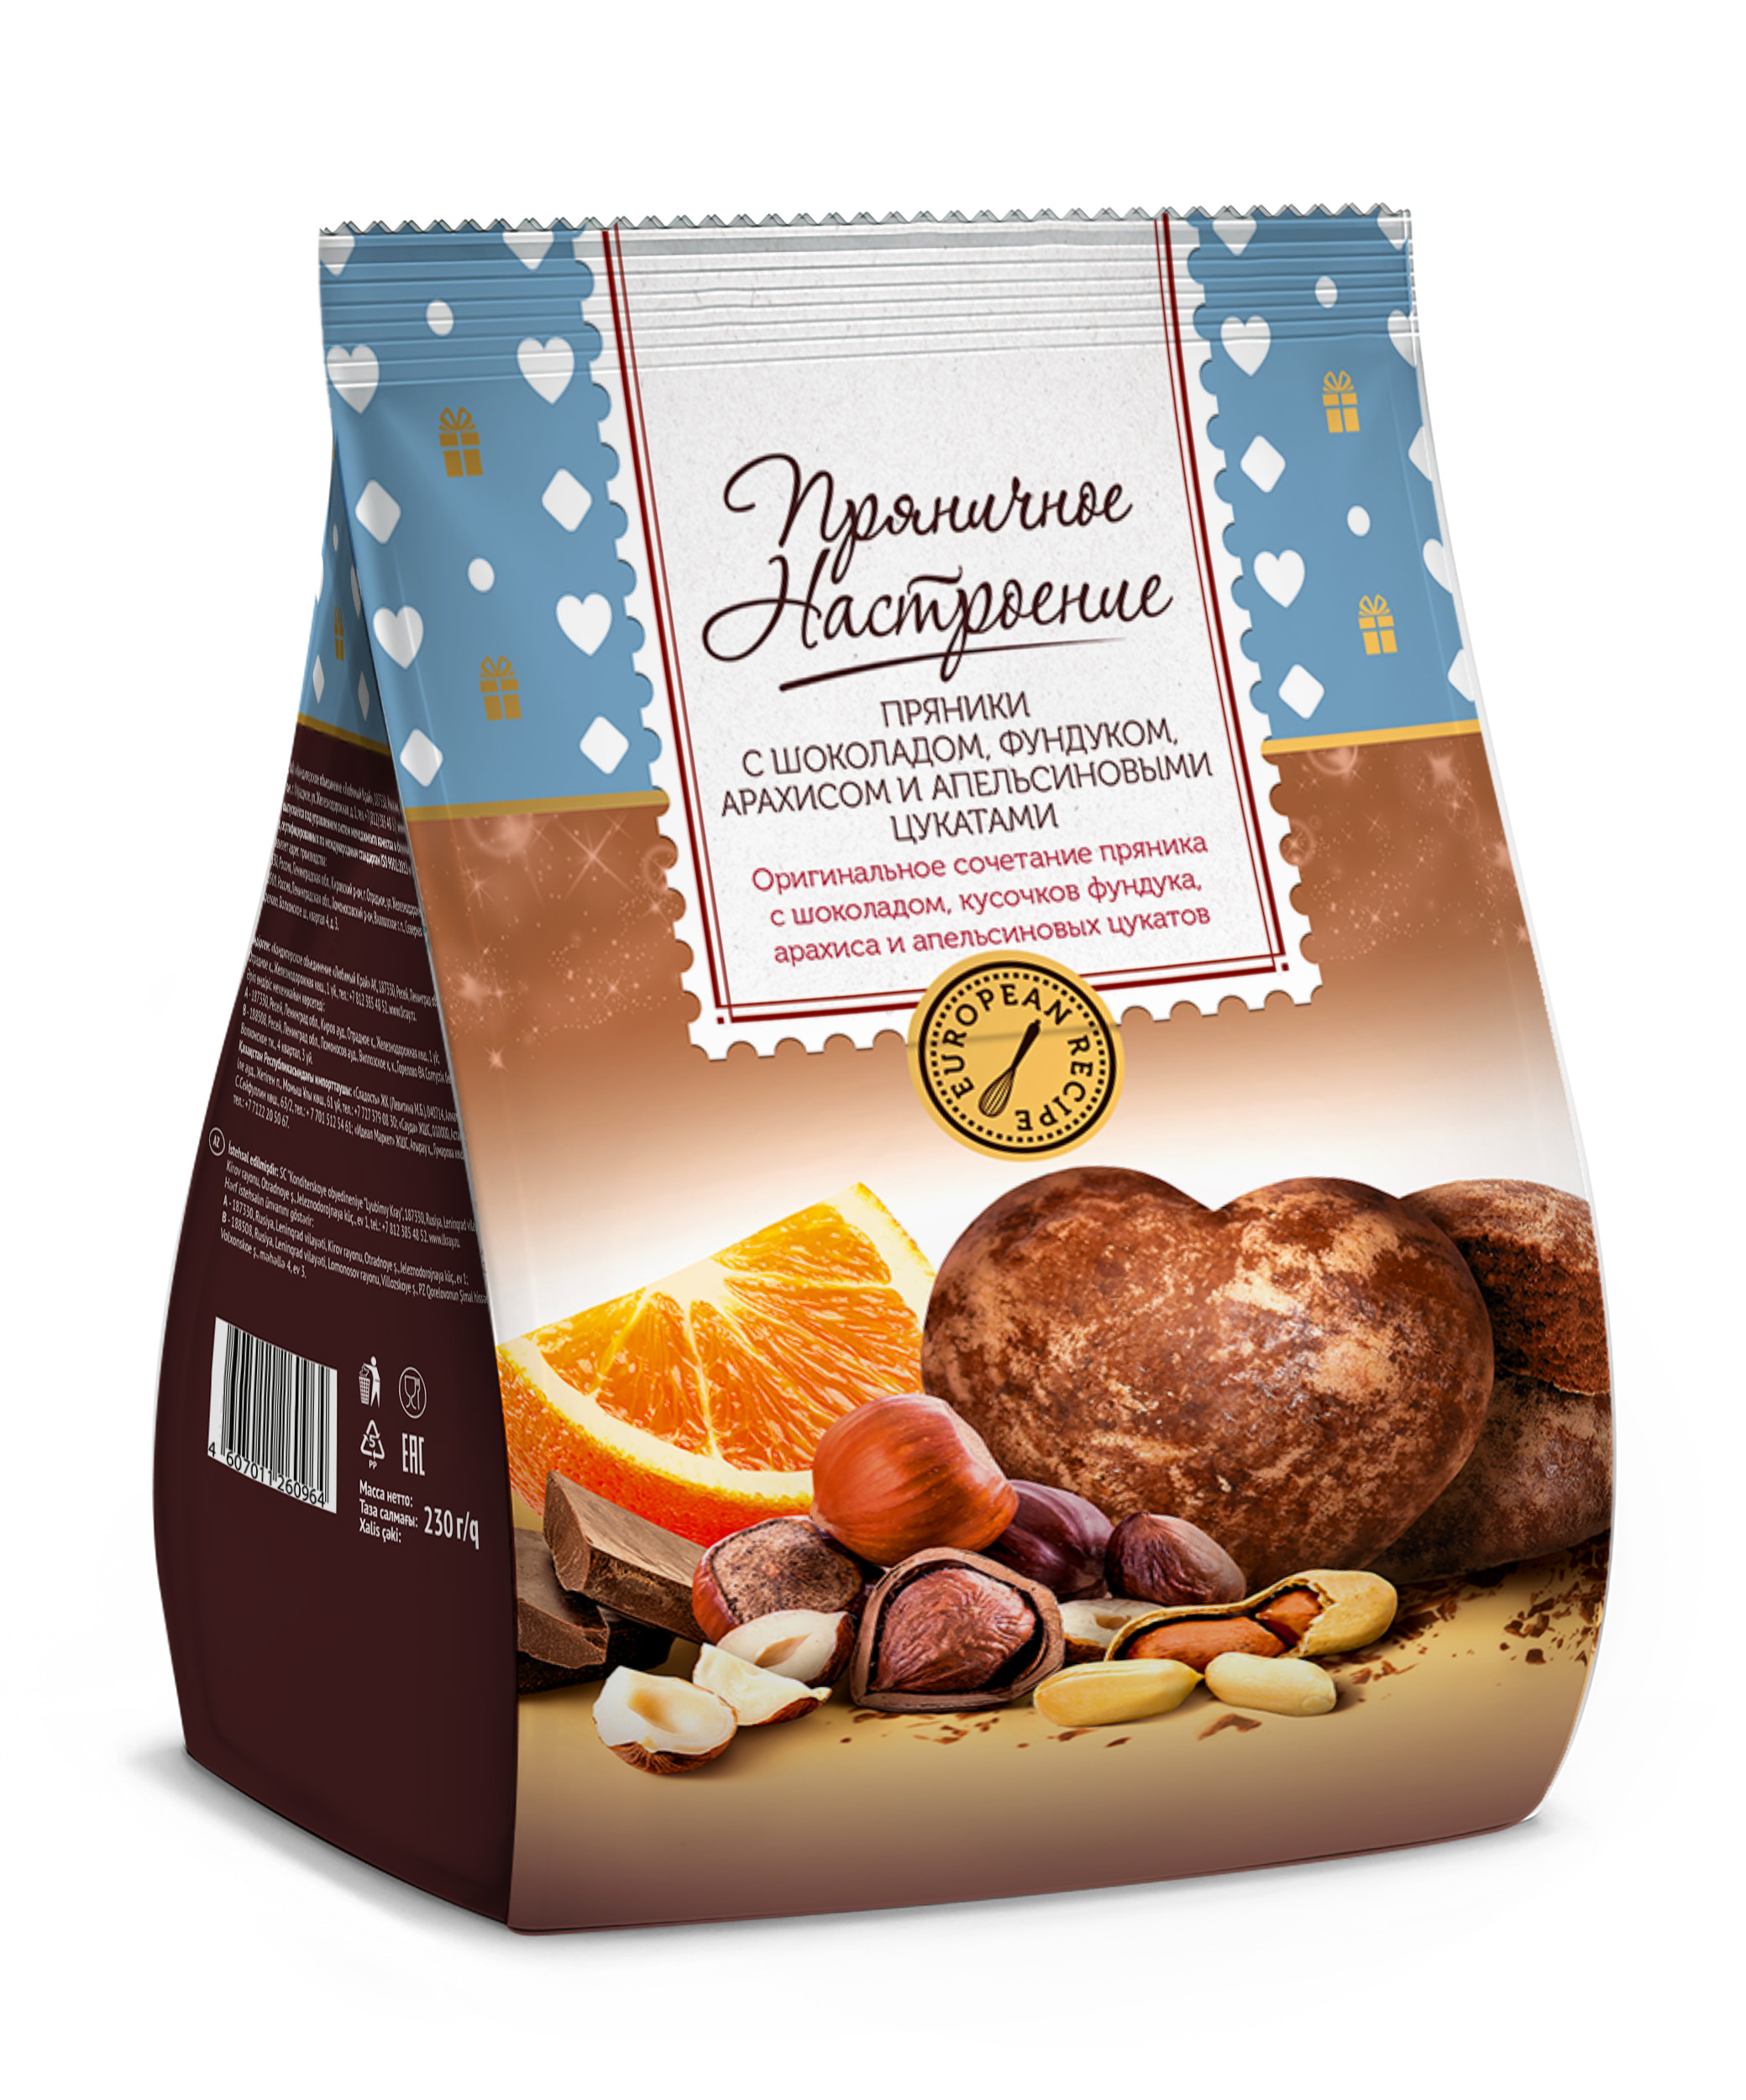 фото Пряники пряничное настроение с шоколадом фундуком арахисом и апельсиновыми цукатами 230г